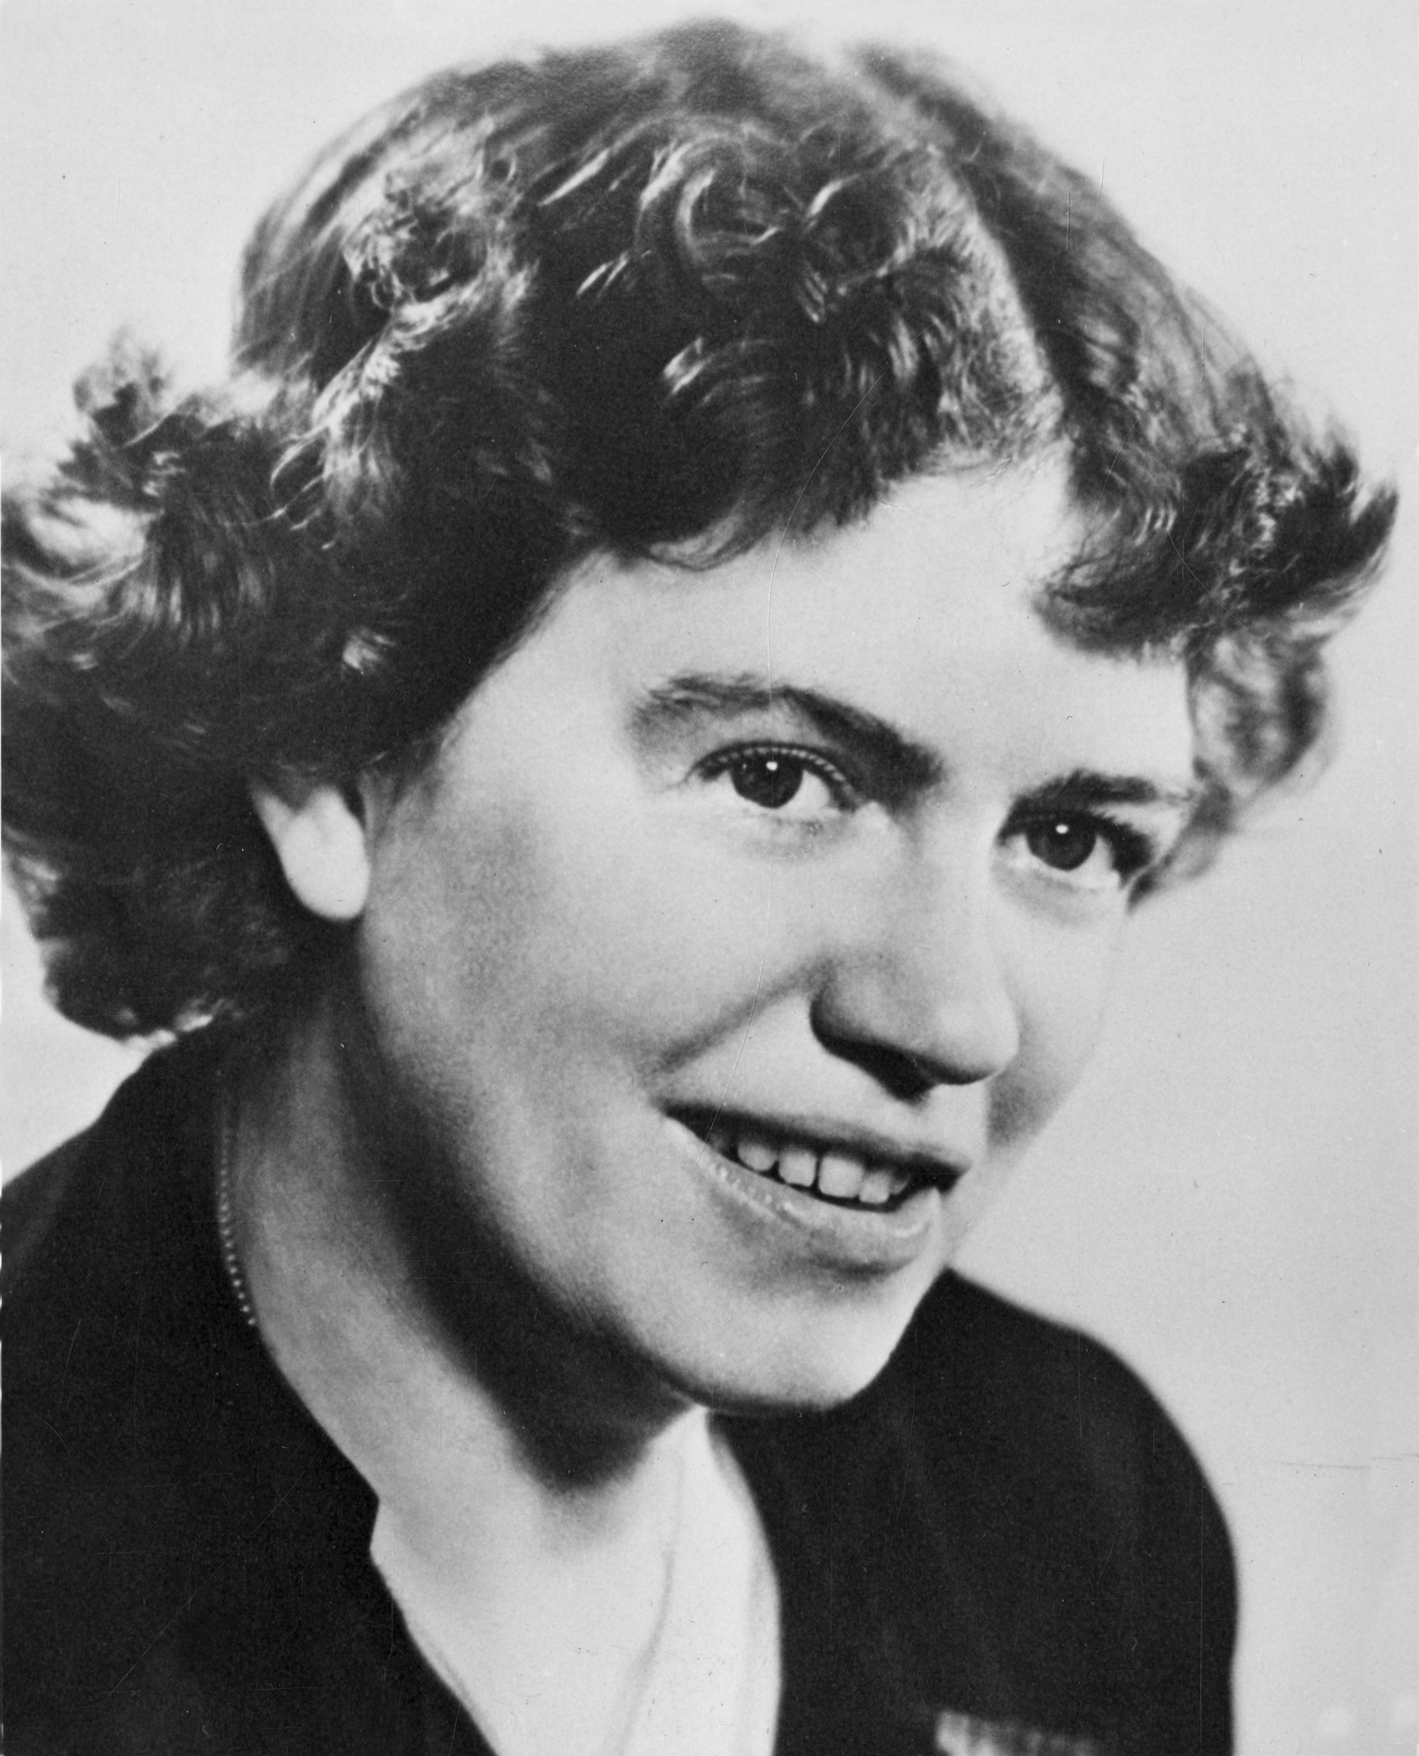 auteur Margaret Mead de la citation L'amour est l'invention de quelques cultures hautes ... c'est un artefact culturel. Faire l'amour, l'exigence d'un mariage à vie est extrêmement difficile, et seules quelques personnes peuvent y parvenir. Je ne crois pas à l'établissement de normes universelles qu'une grande partie de personnes ne peut pas atteindre.